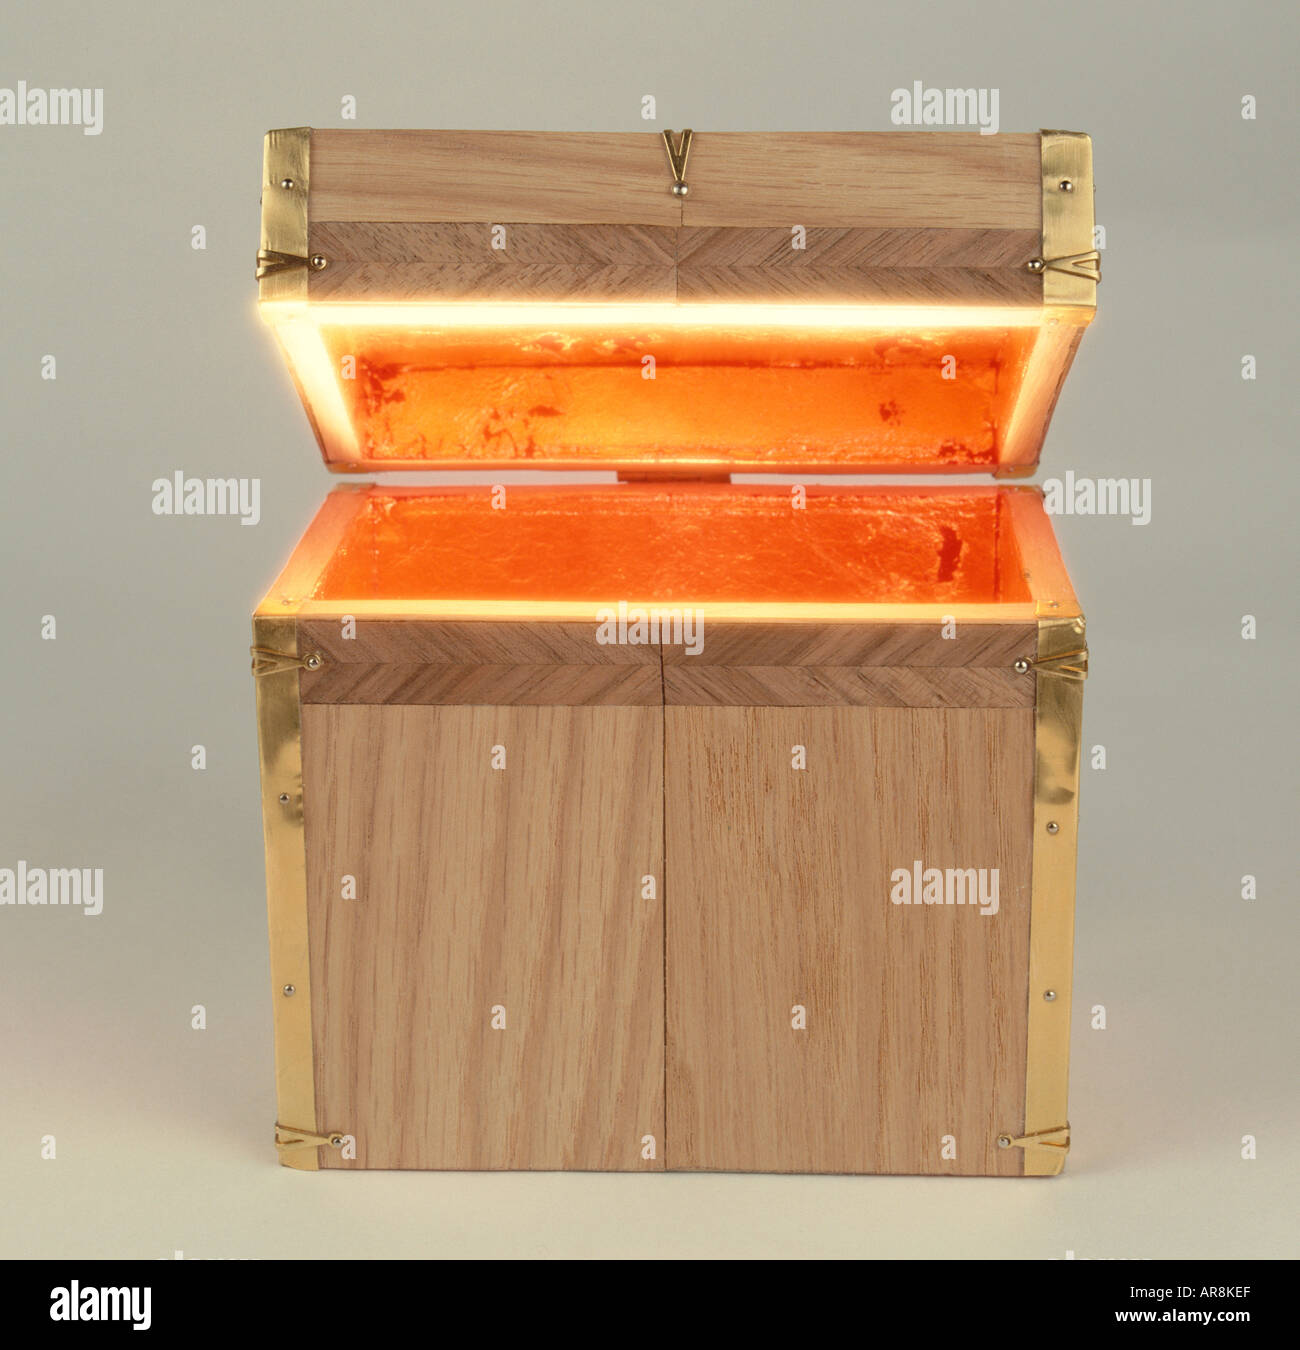 Boîte en bois avec couvercle à charnière, ouverte et rayonnante de lumière  d'or qui brille de l'intérieur, vue de face Photo Stock - Alamy